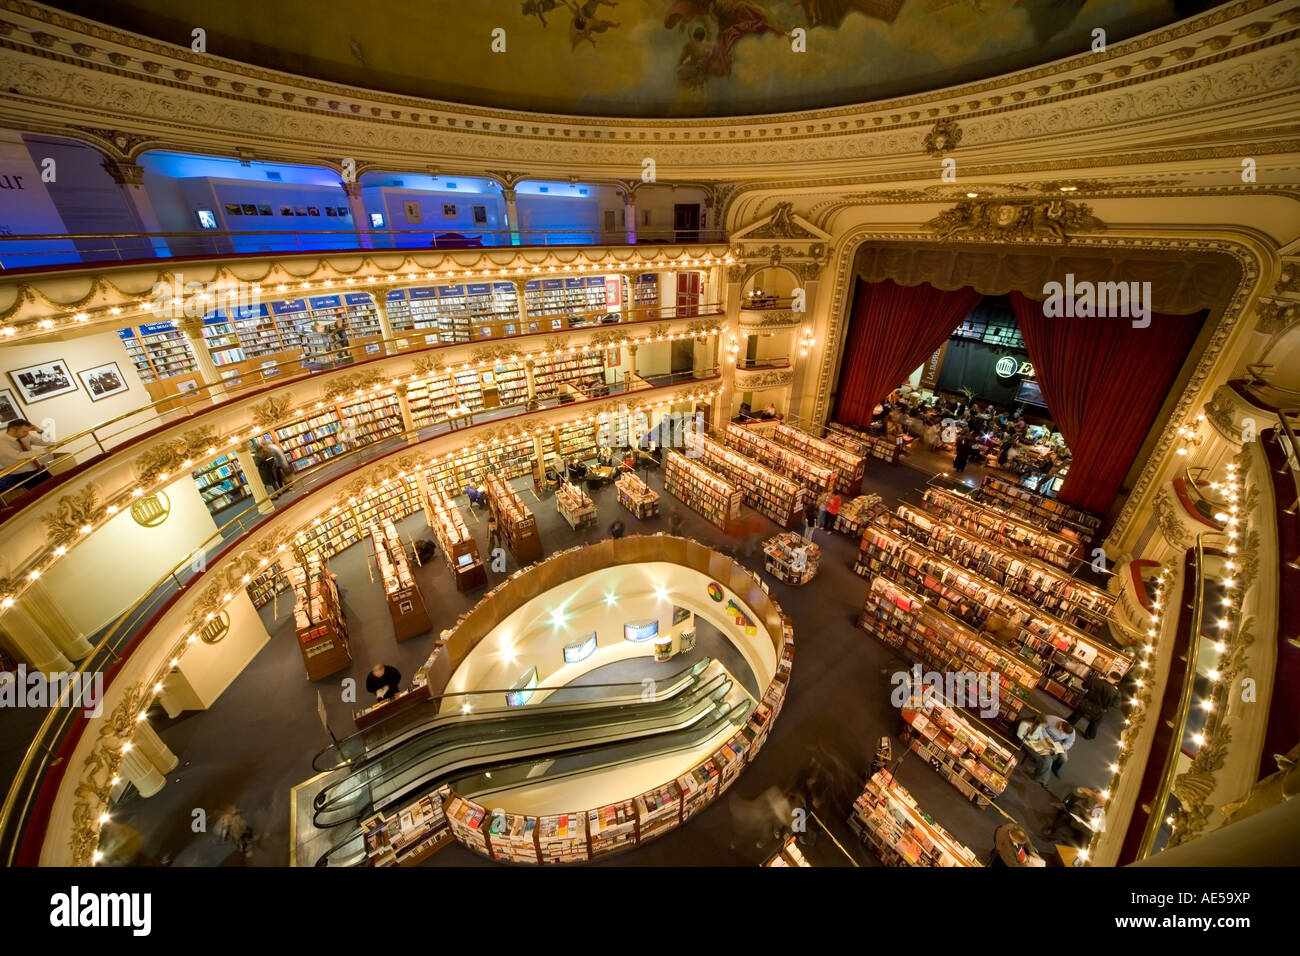 El Ateneo Grand splendido mega bookstore di Recoleta Buenos Aires Argentina. Teatro di vecchi e convertiti in moderni book store, negozio. Foto Stock